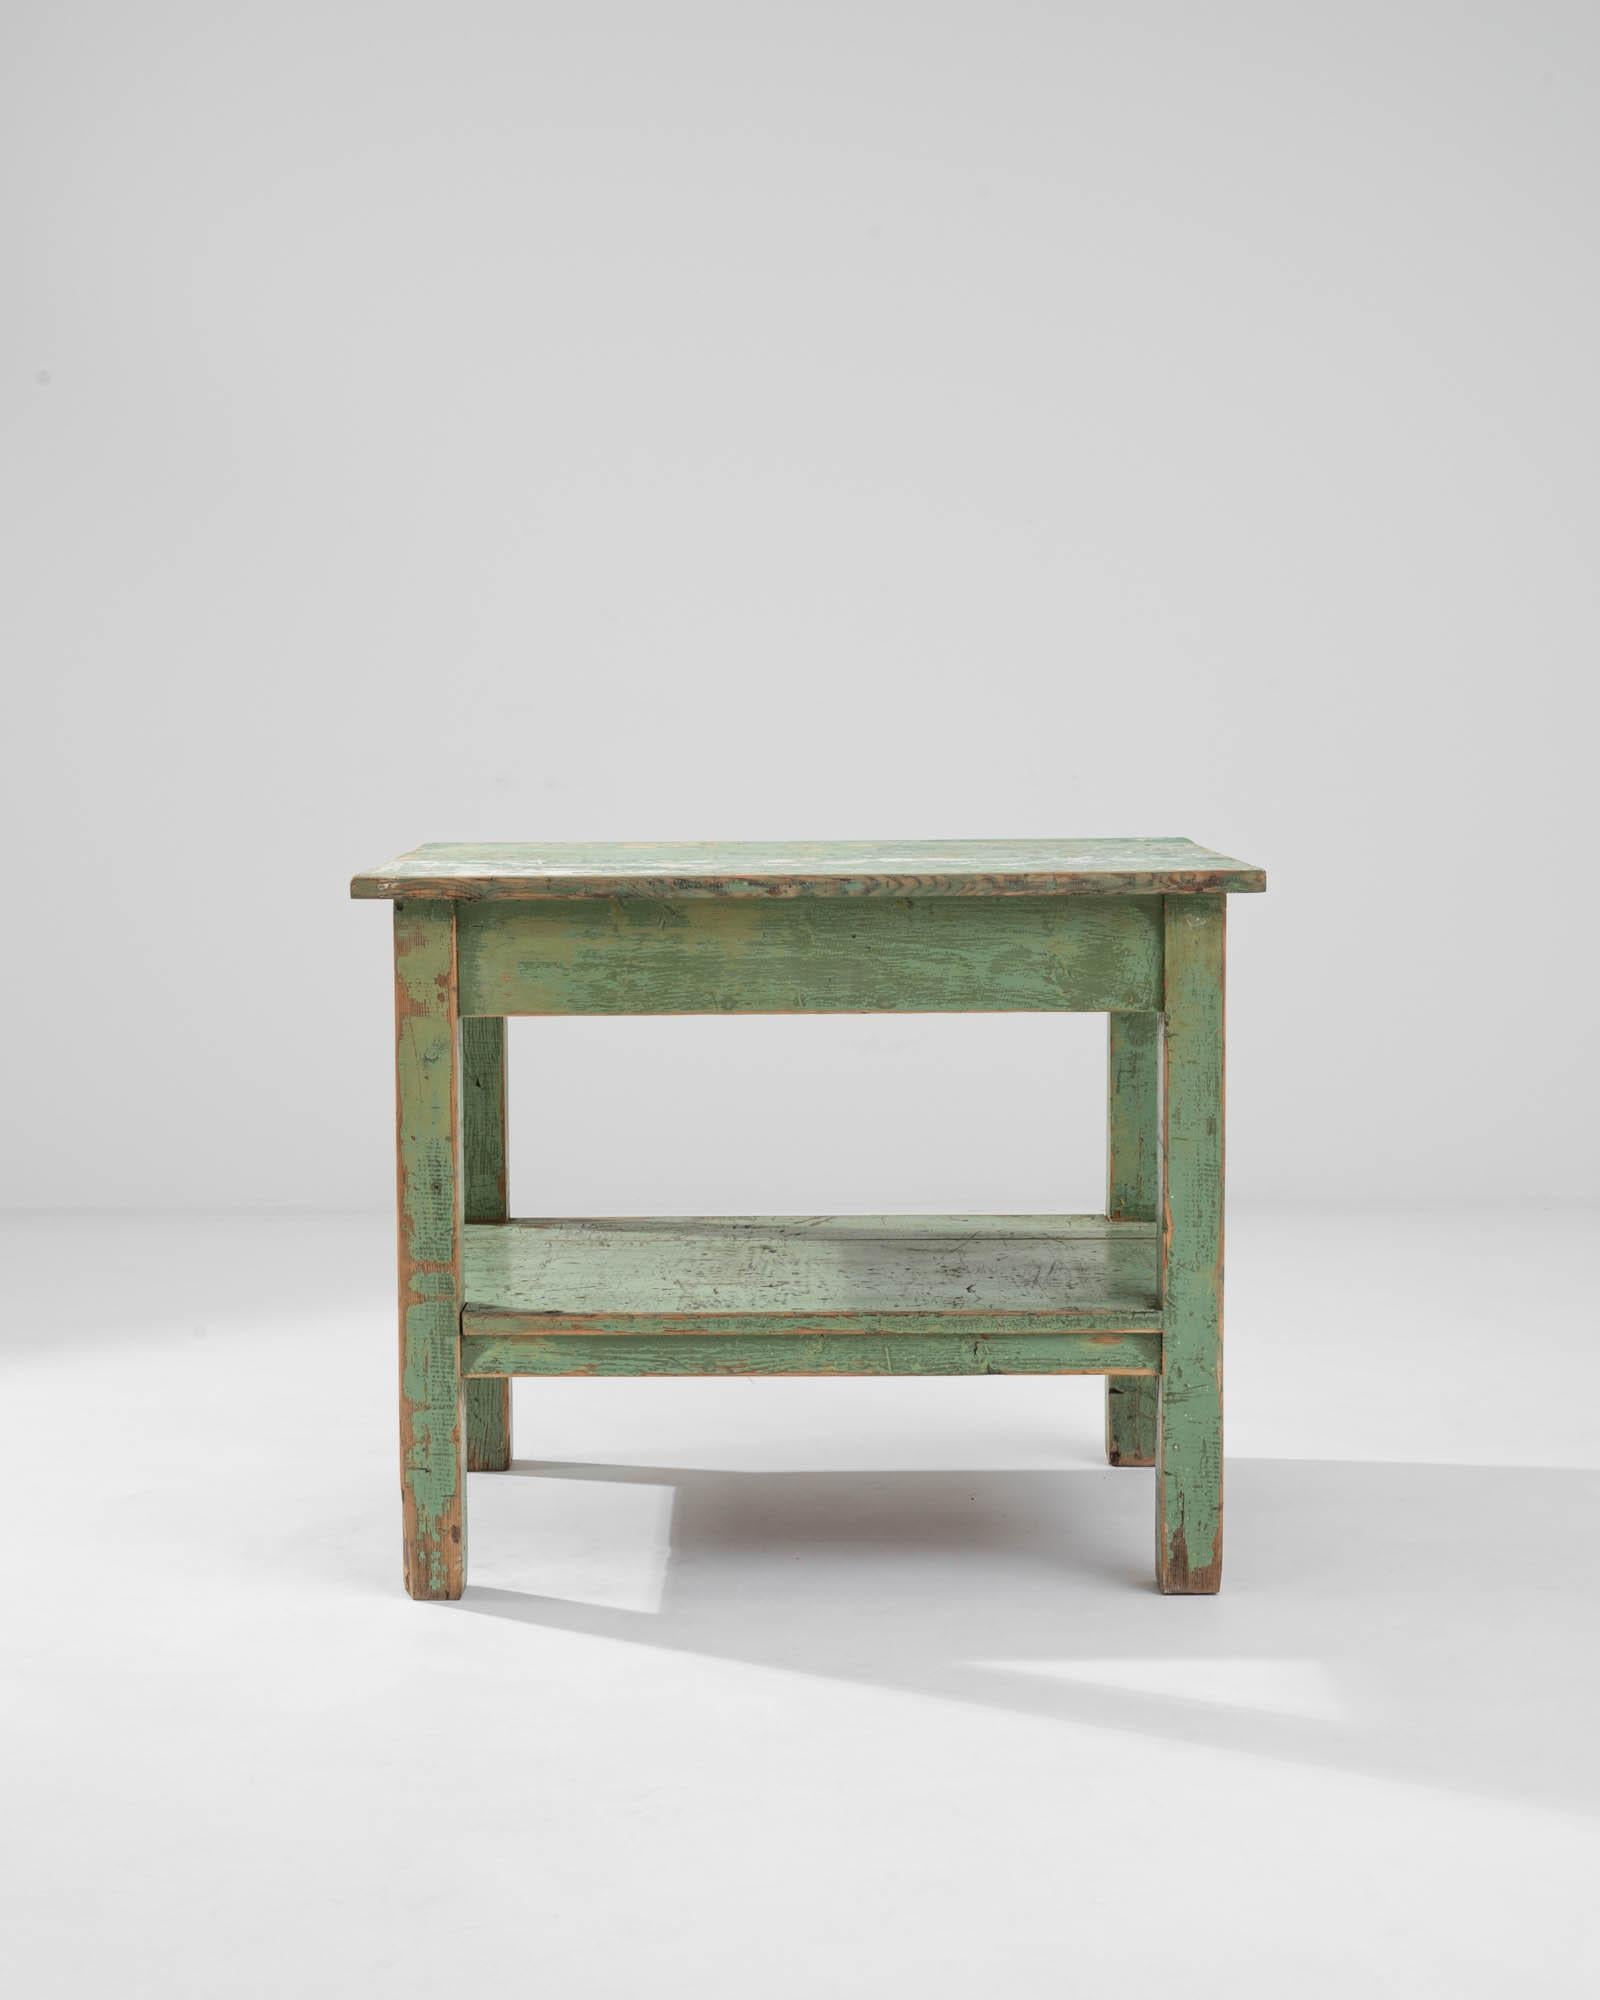 Dieser charmante antike Tisch, der um 1900 in Frankreich gefertigt wurde, weist eine originale, leicht verwitterte Patina in einem gedämpften hellgrünen Farbton auf, die den strukturellen Reichtum seiner Erscheinung noch verstärkt und interessante